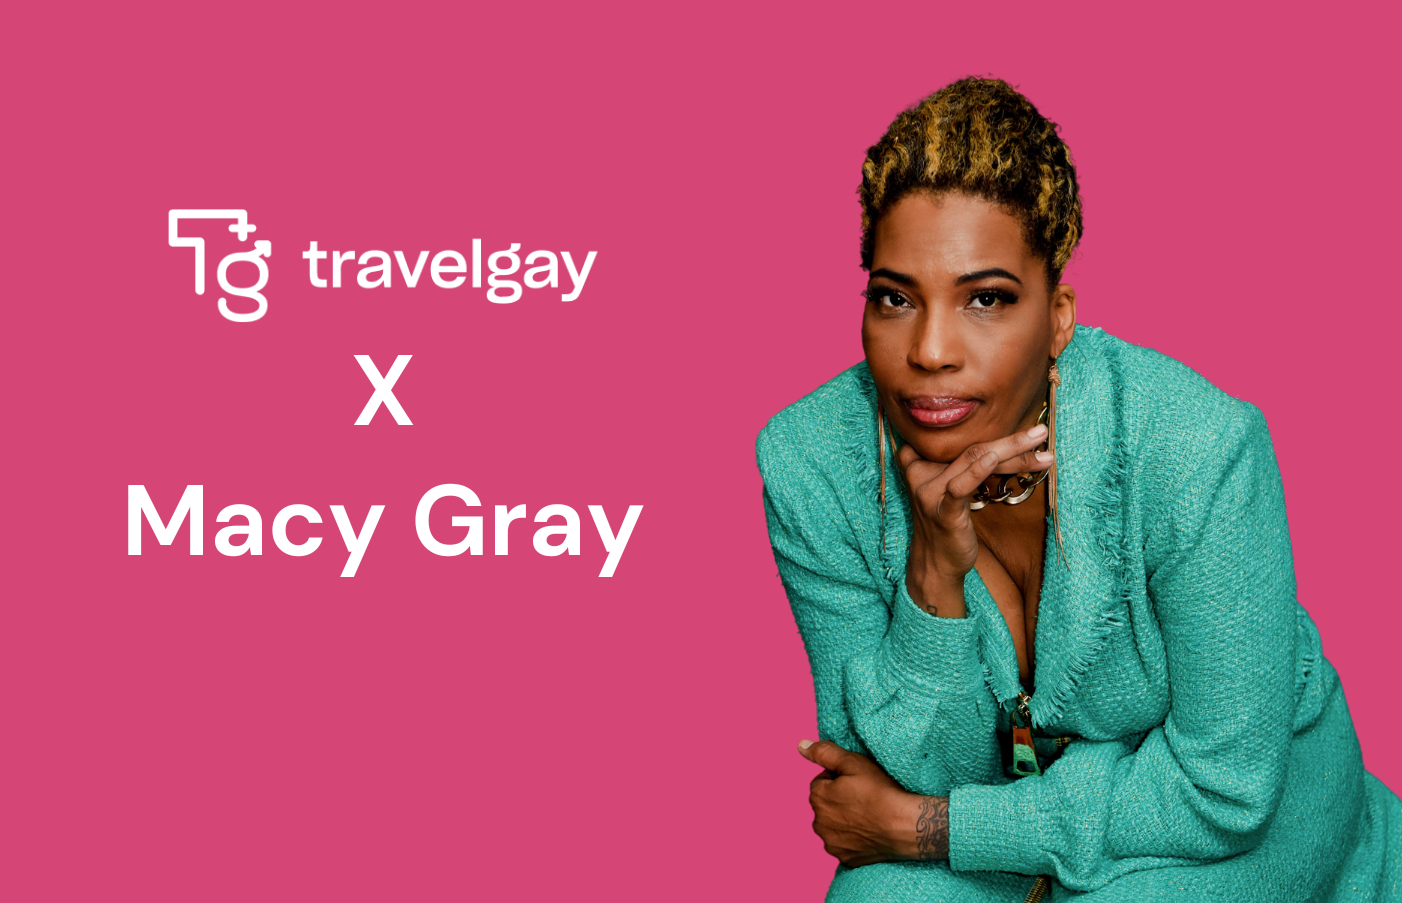 Travel Gay मैसी ग्रे से मुलाकात